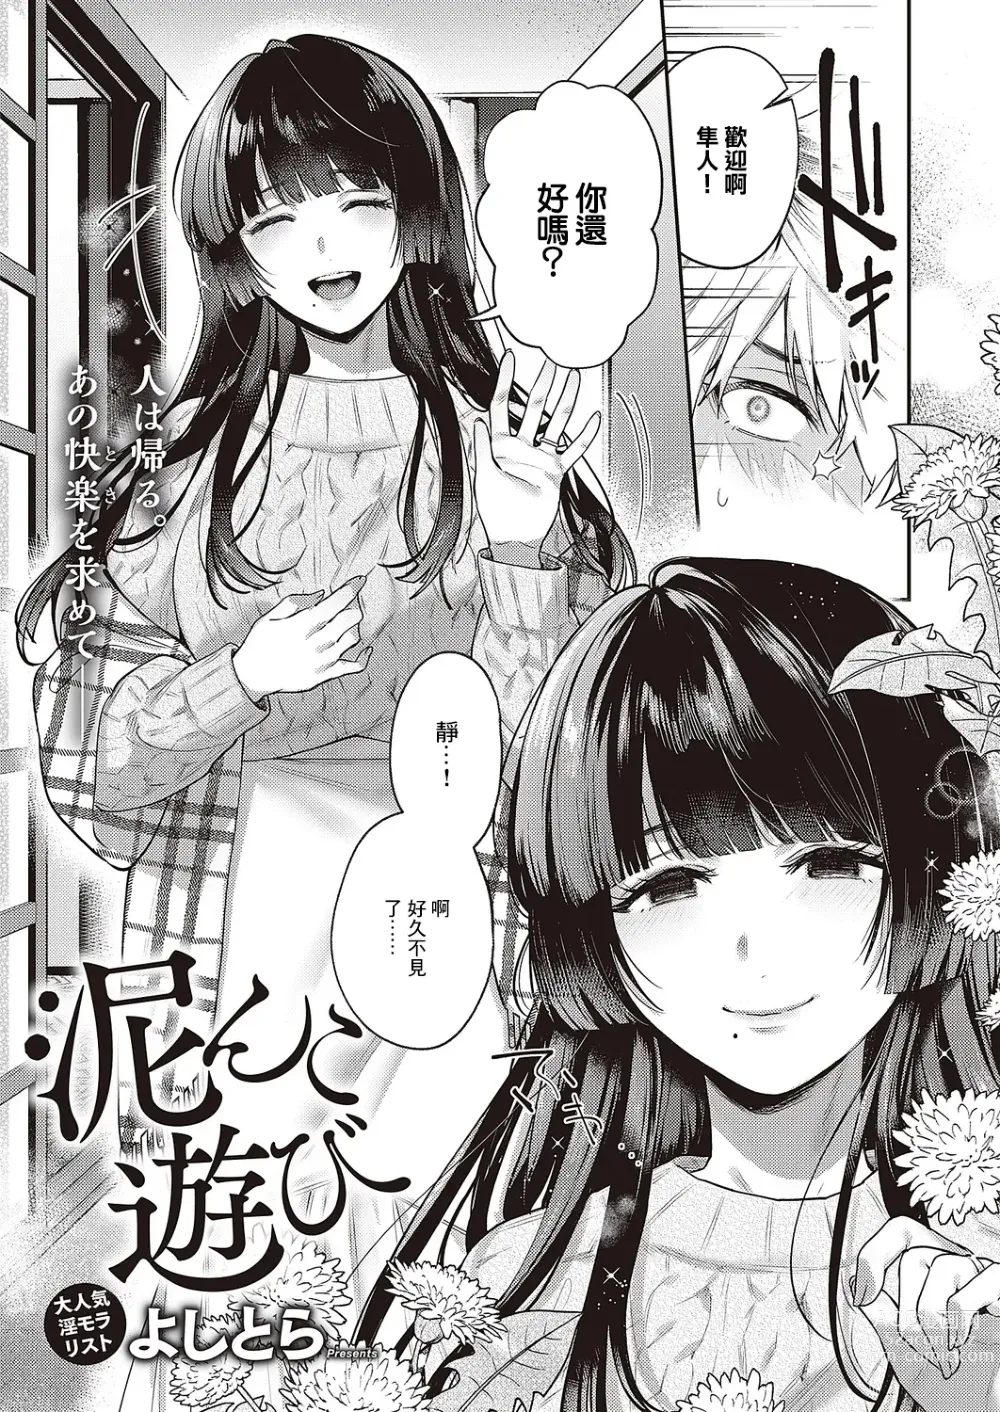 Page 2 of manga Doronko Asobi